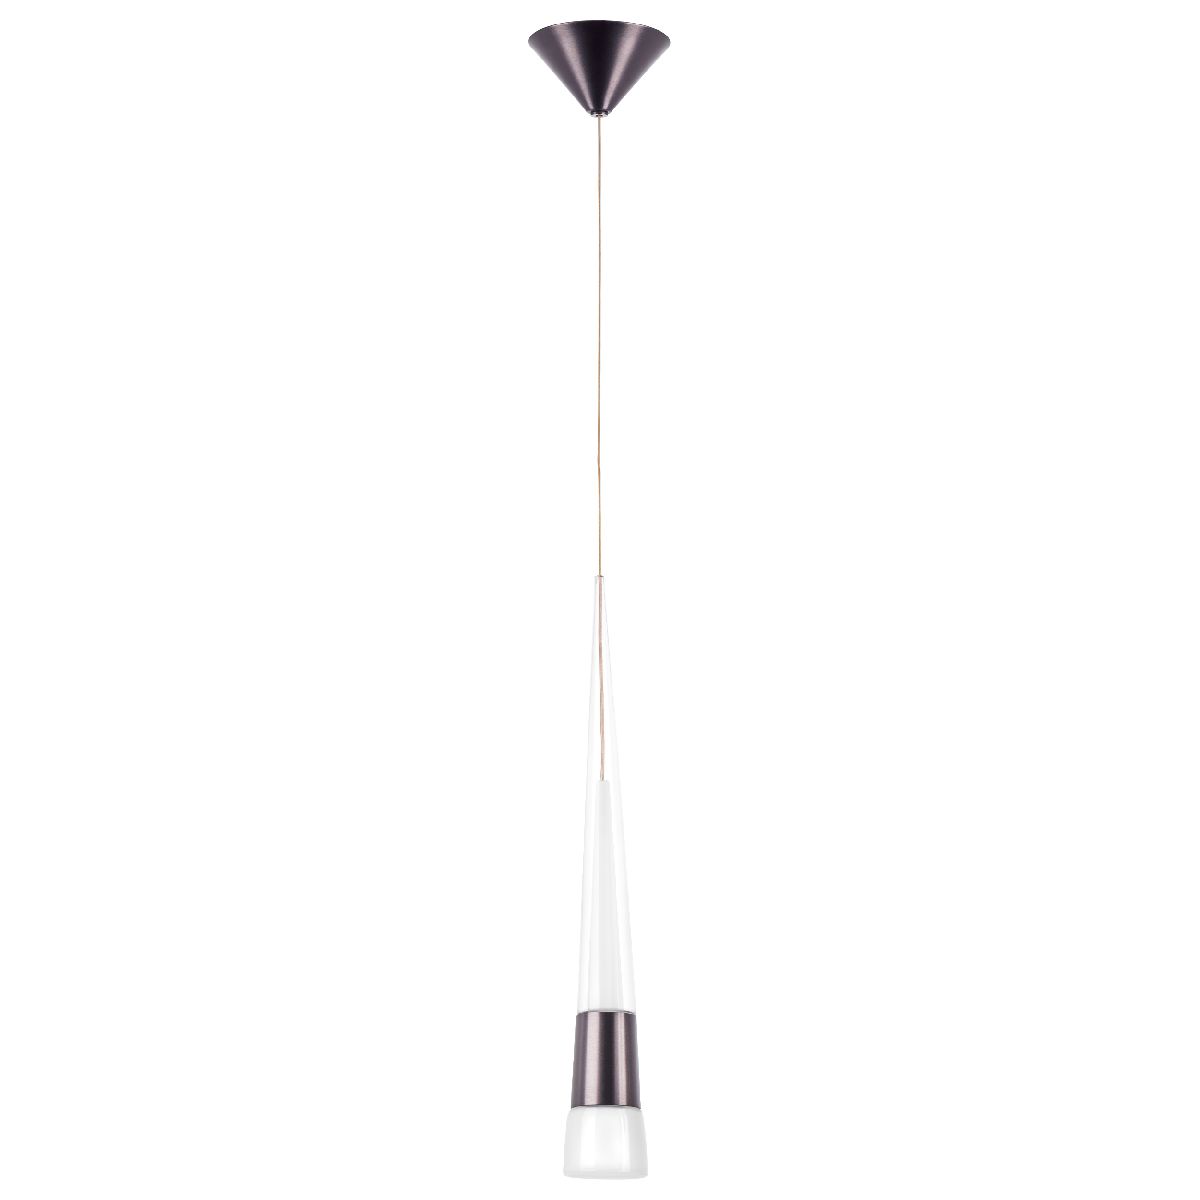 Подвесной светильник Lightstar Cone 757011